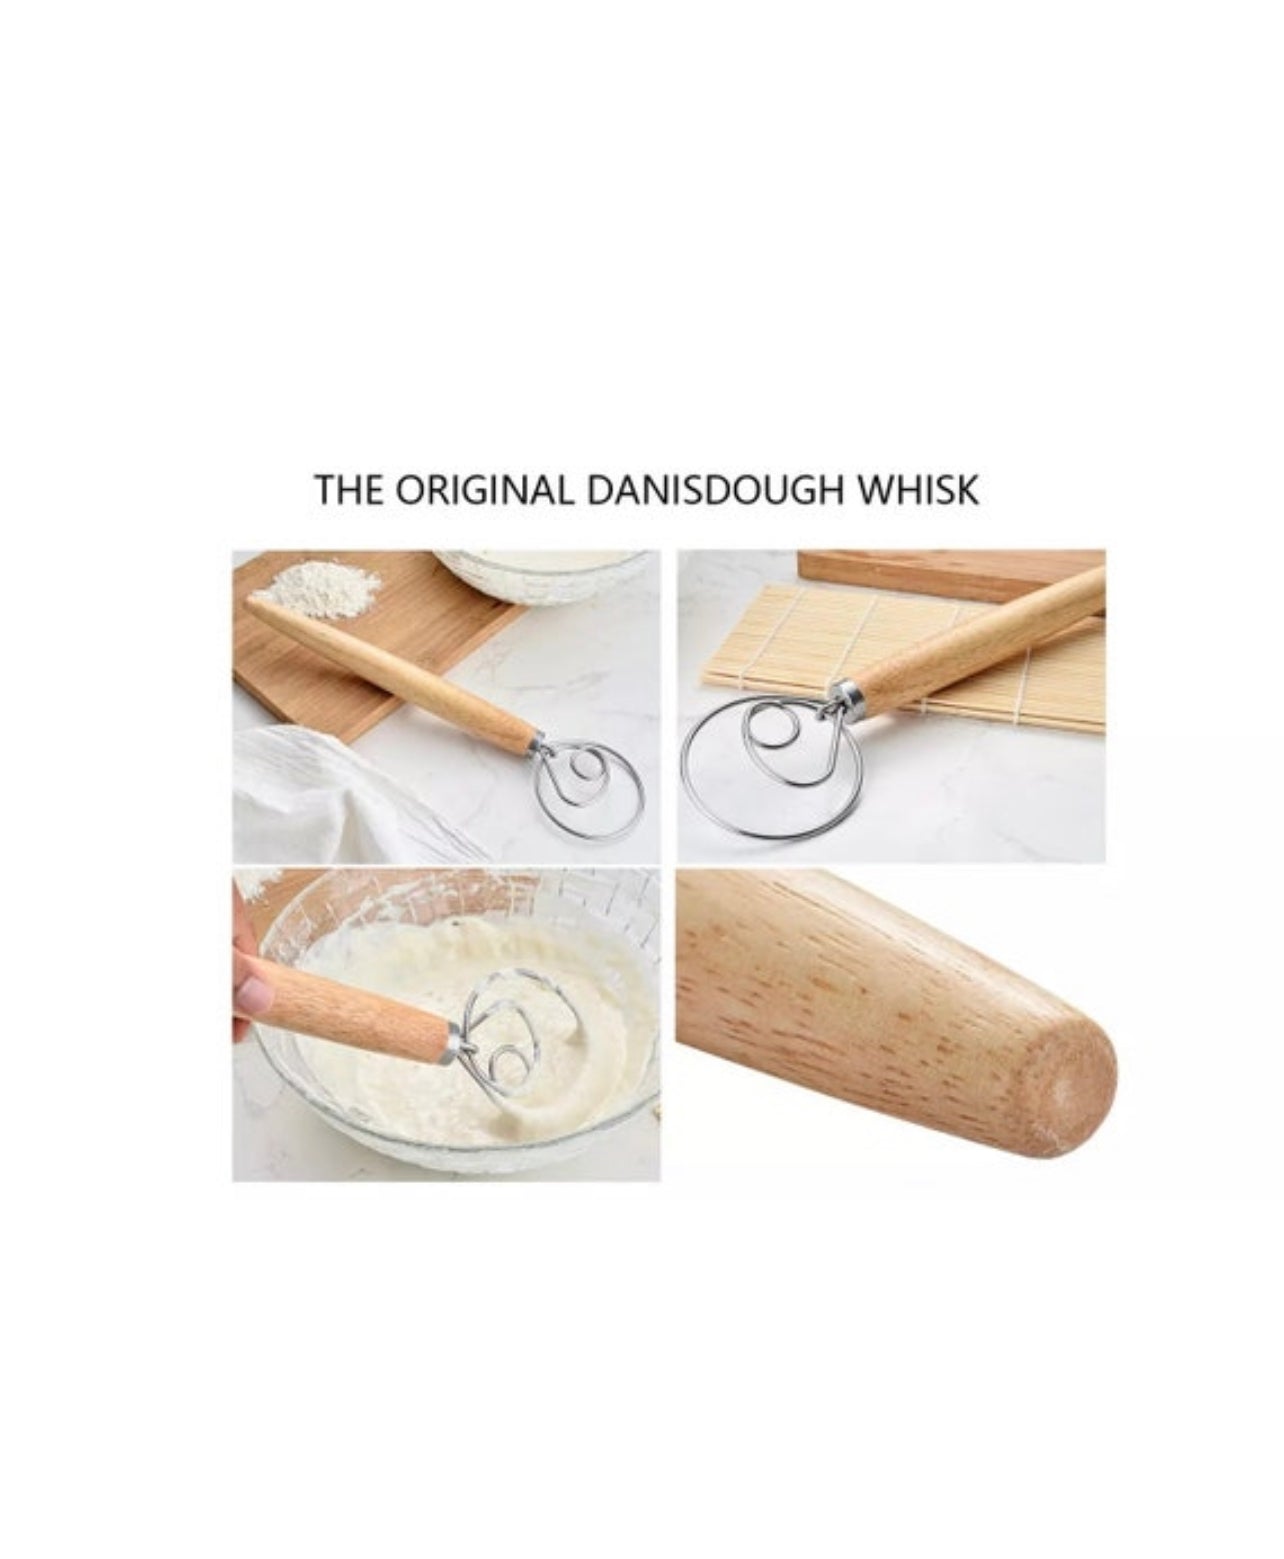 13" Danish Dough Whisk Hand Mixer